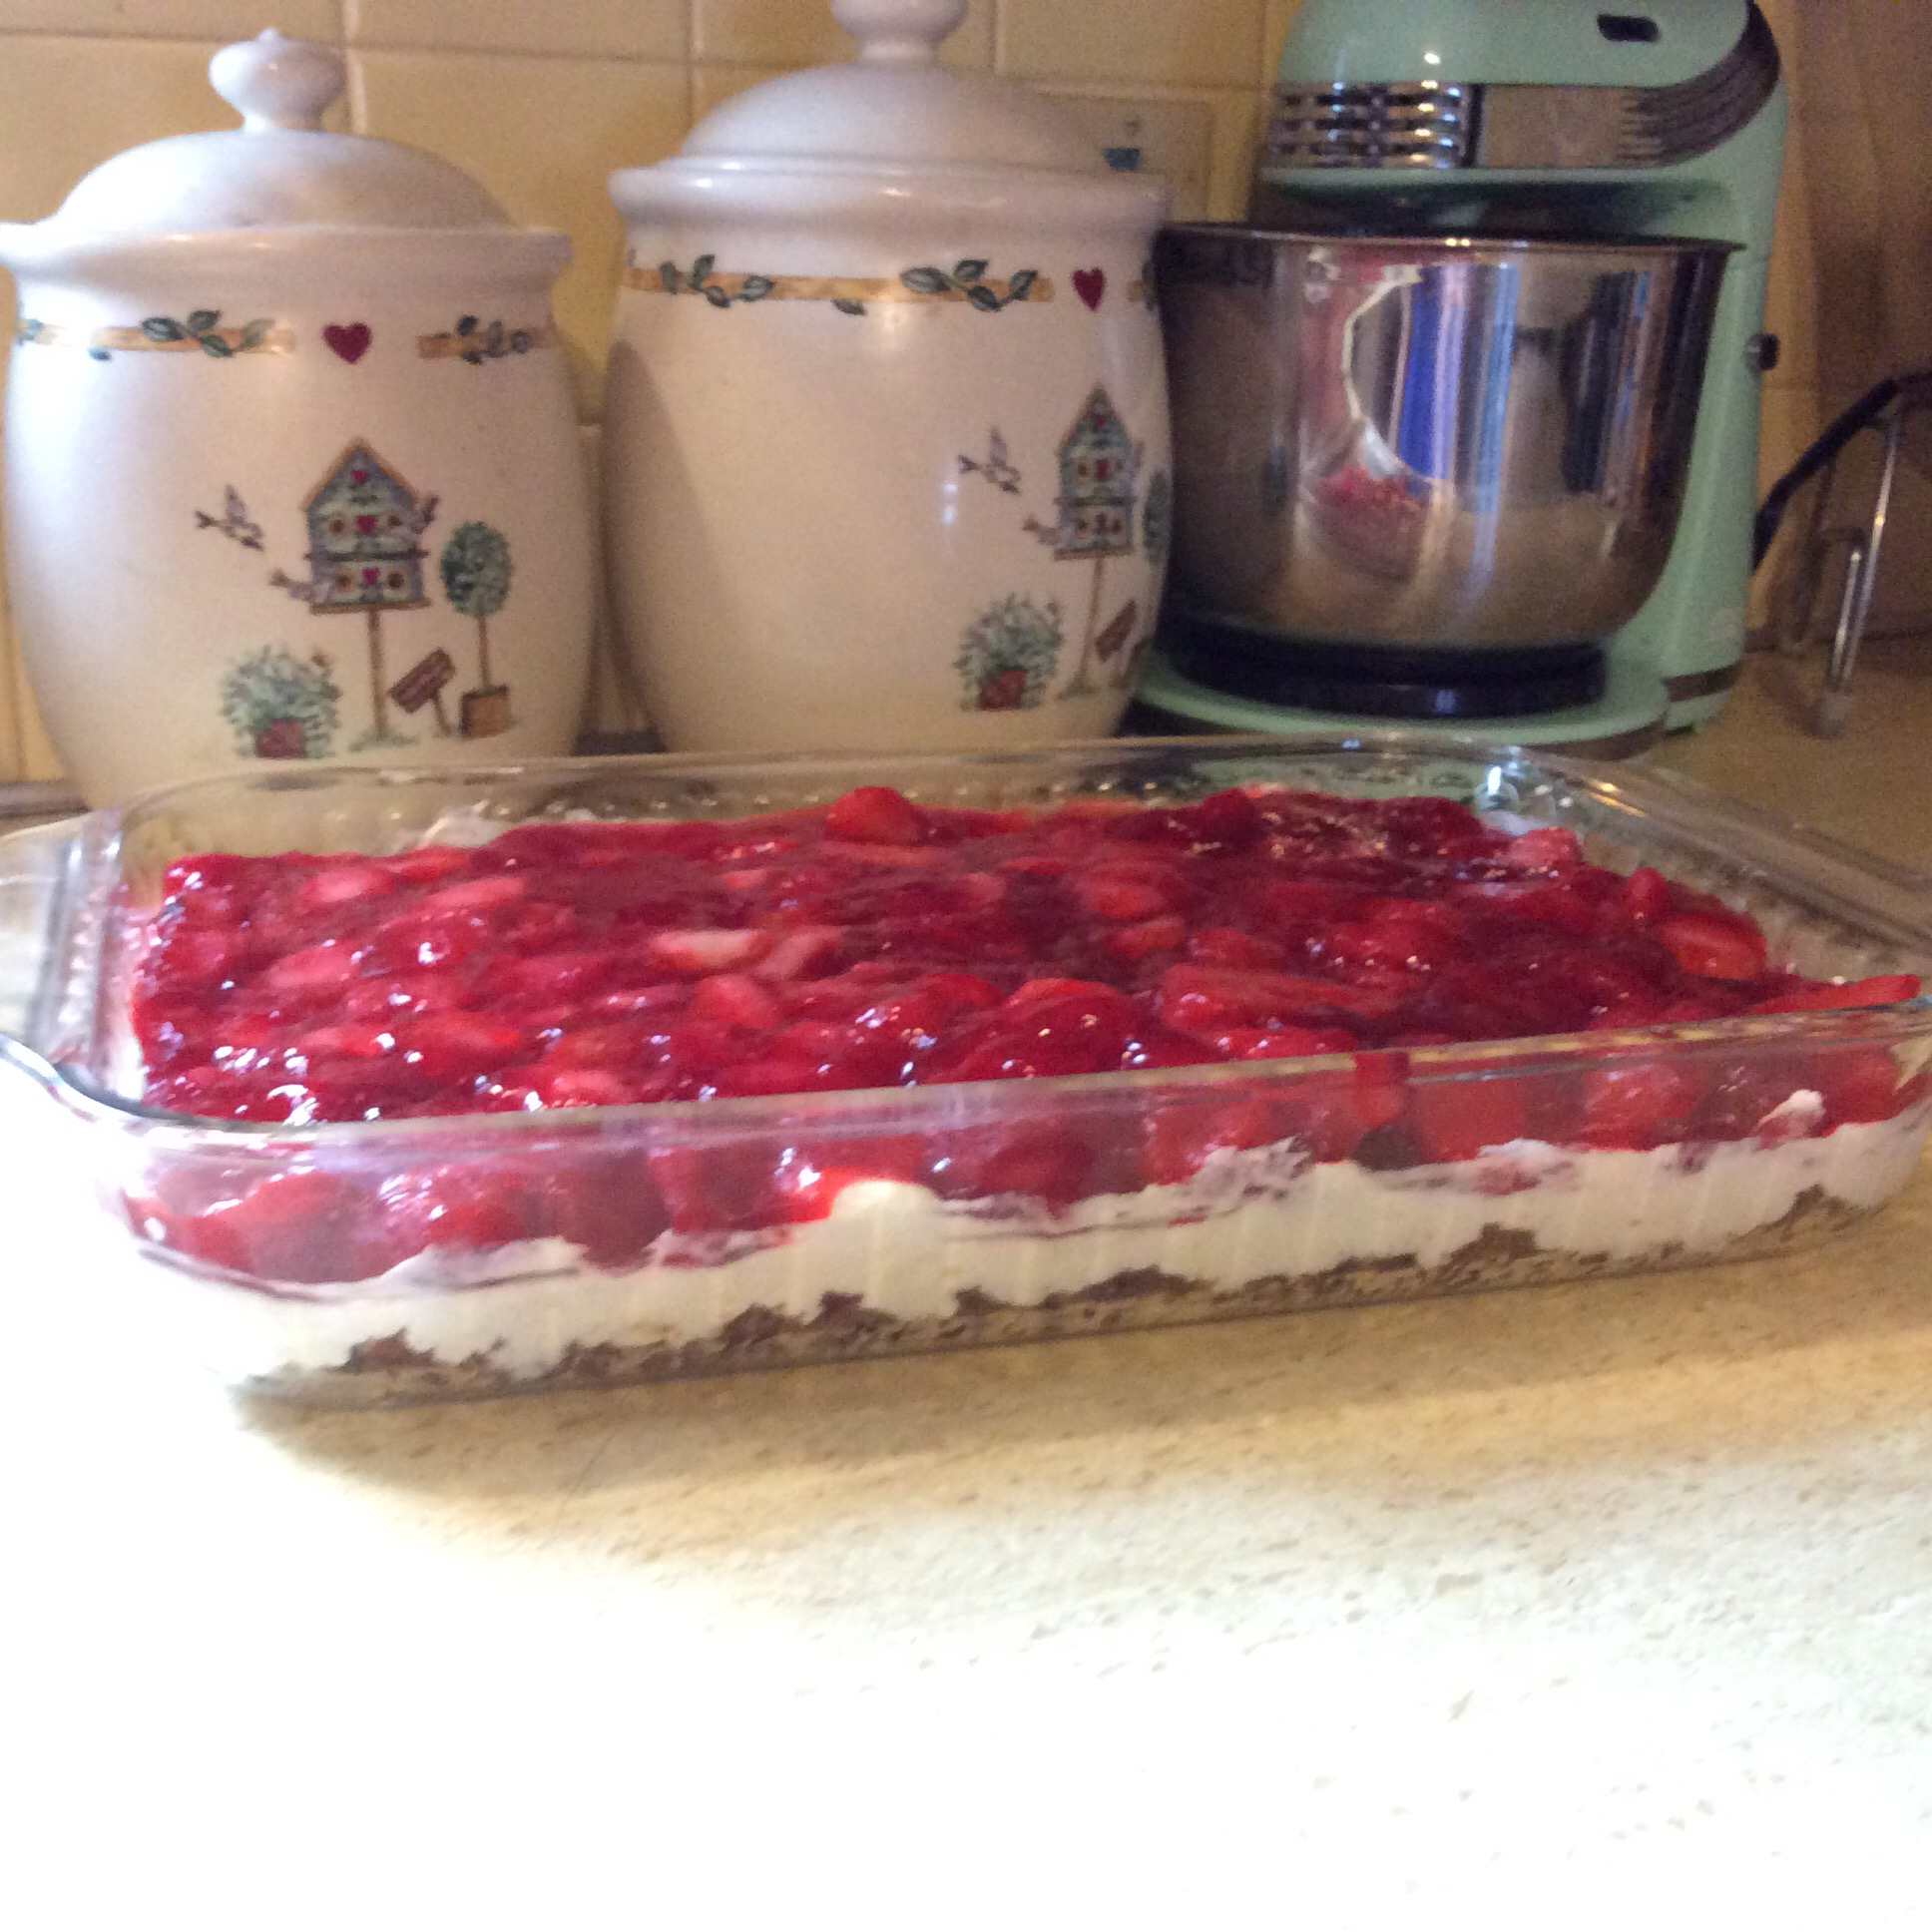 Strawberry Pretzel Pie